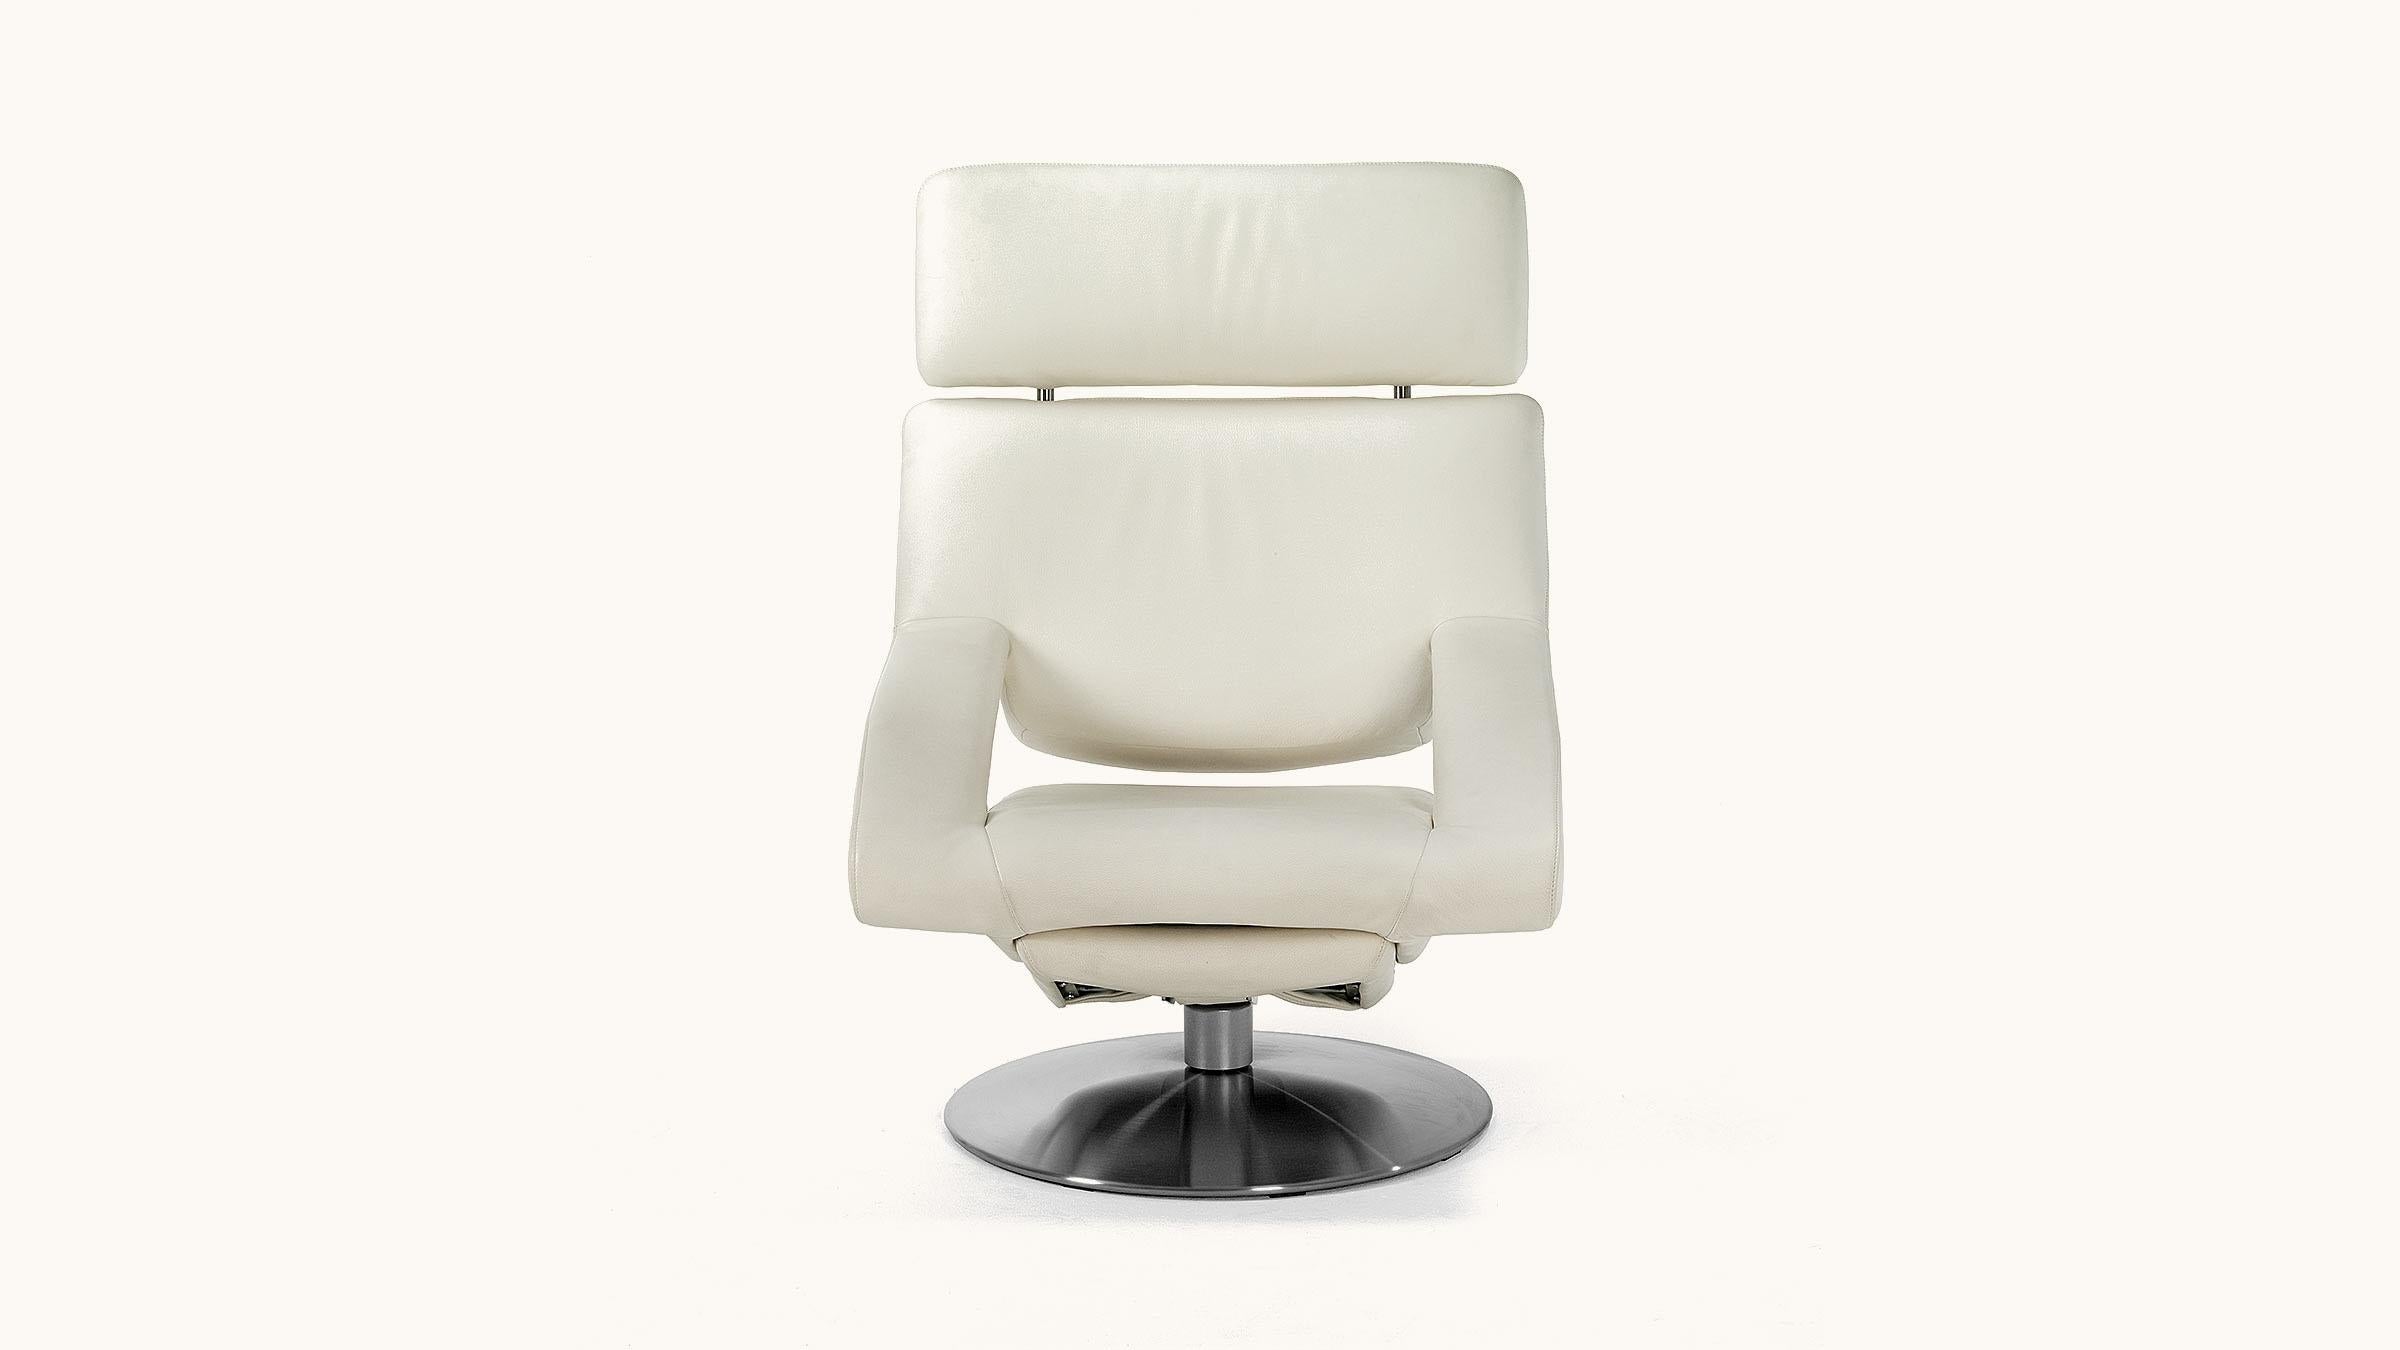 La chaise est l'objet d'ameublement moderne qui a le plus occupé les designers. Aucun autre meuble n'a fait l'objet d'autant de tests, d'études et d'examens minutieux quant à sa composition, son confort et sa fonction - cœur et poumons - que la